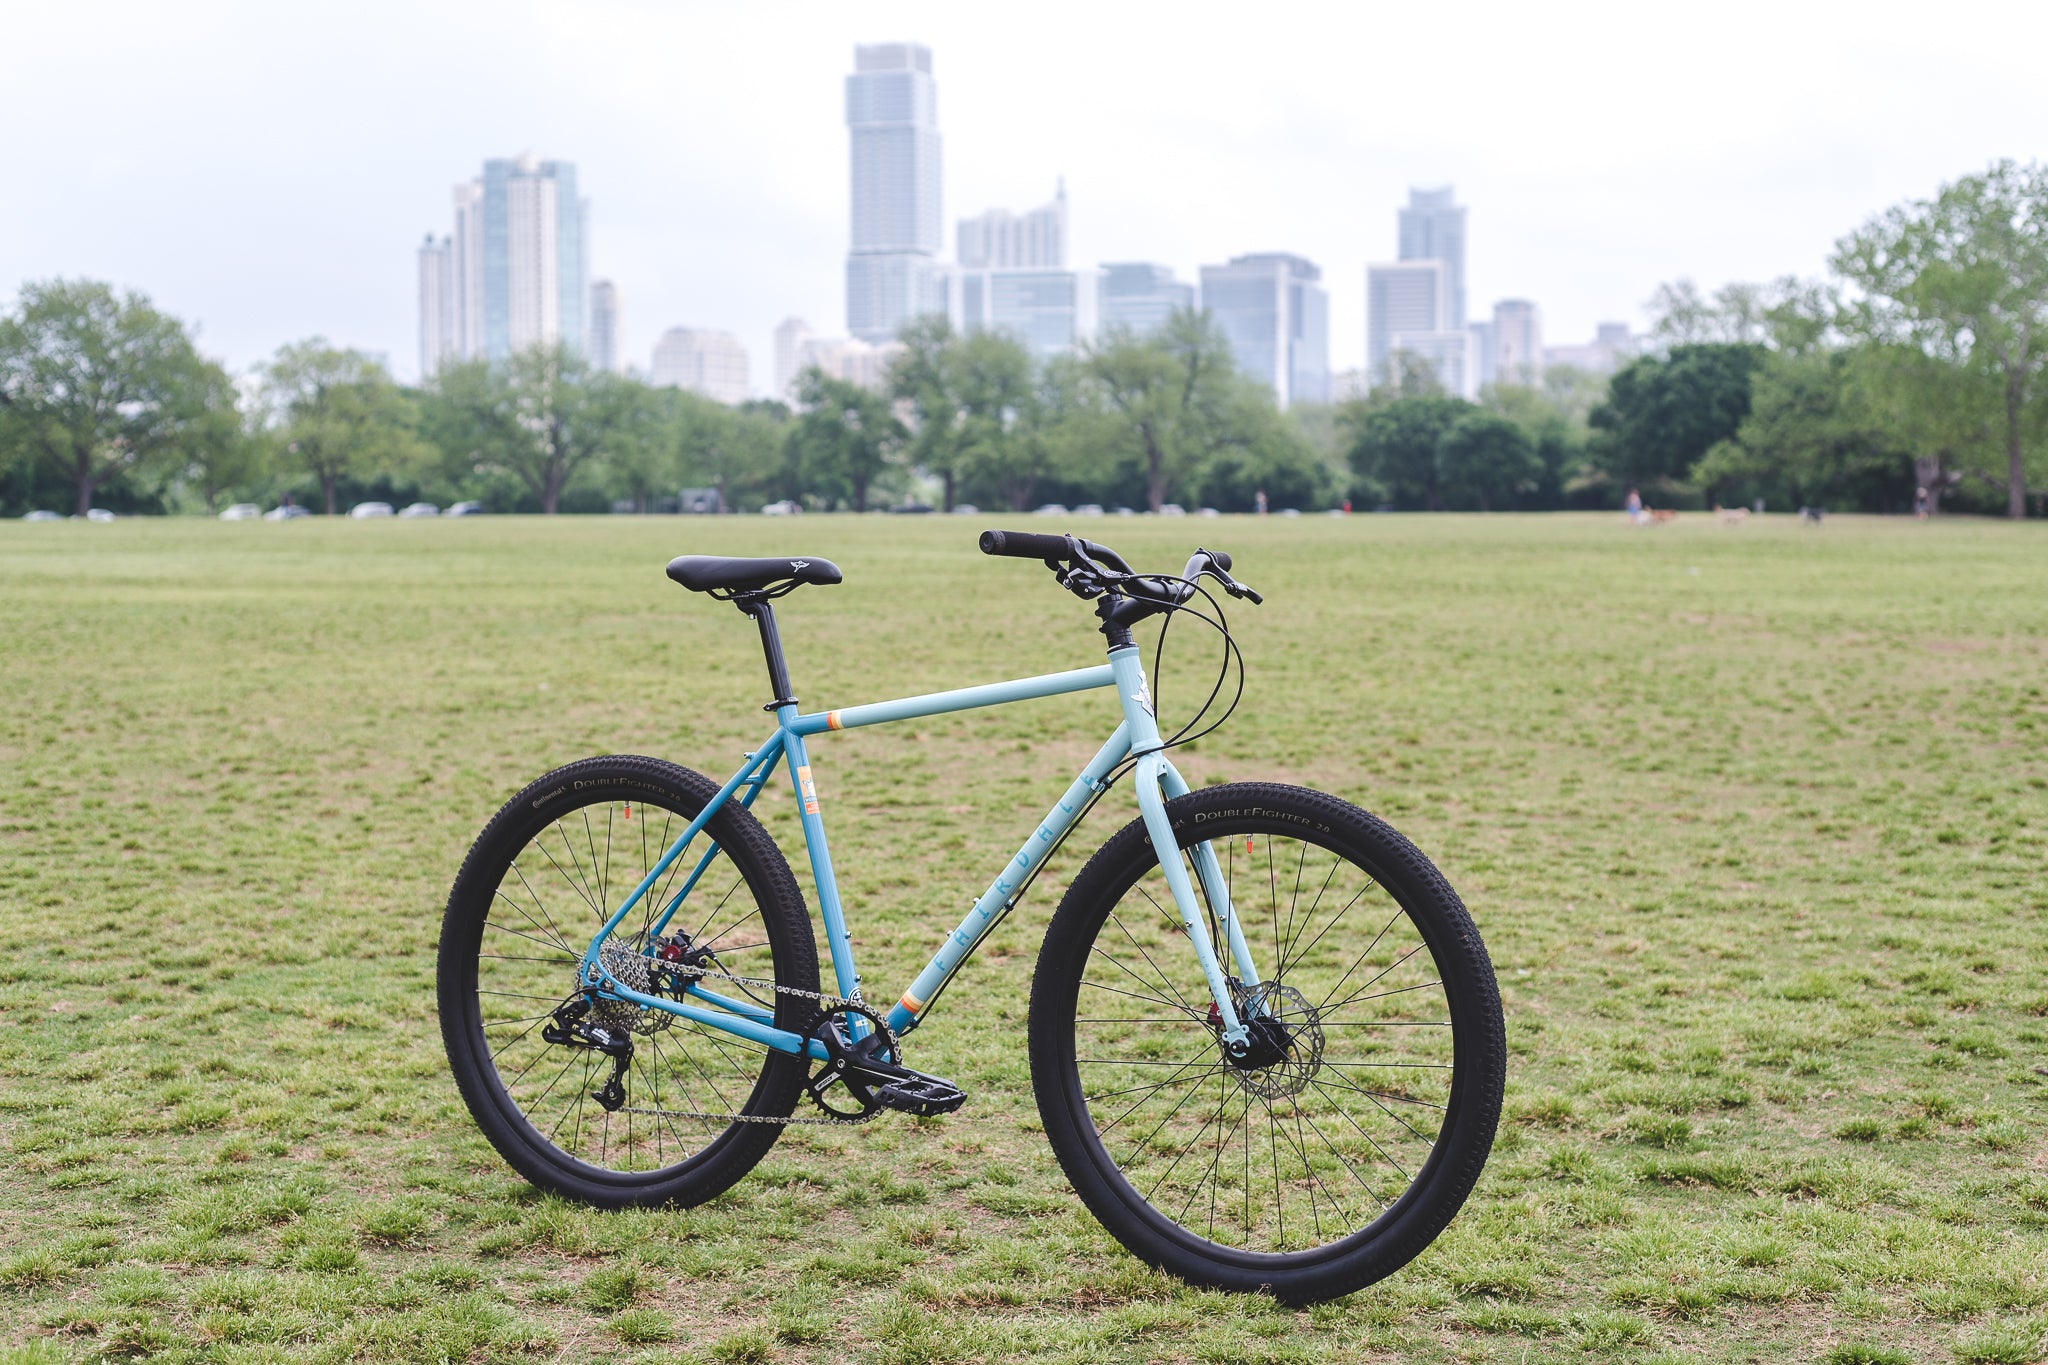 specialized city bike kickstand